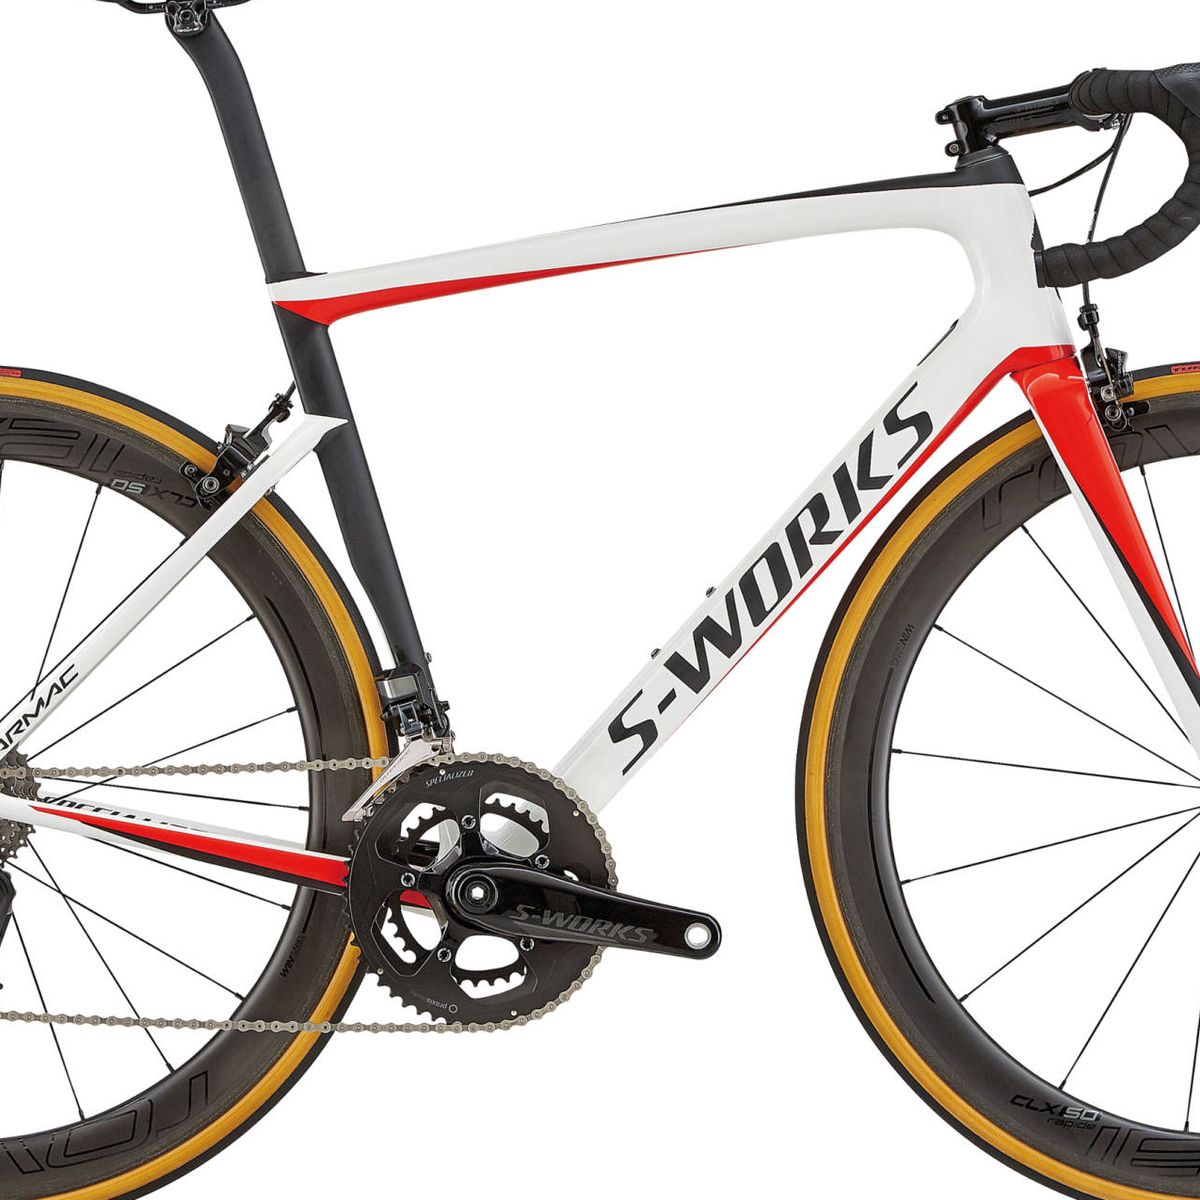 altos precios que si quieres comprar una bicicleta del Tour de Francia